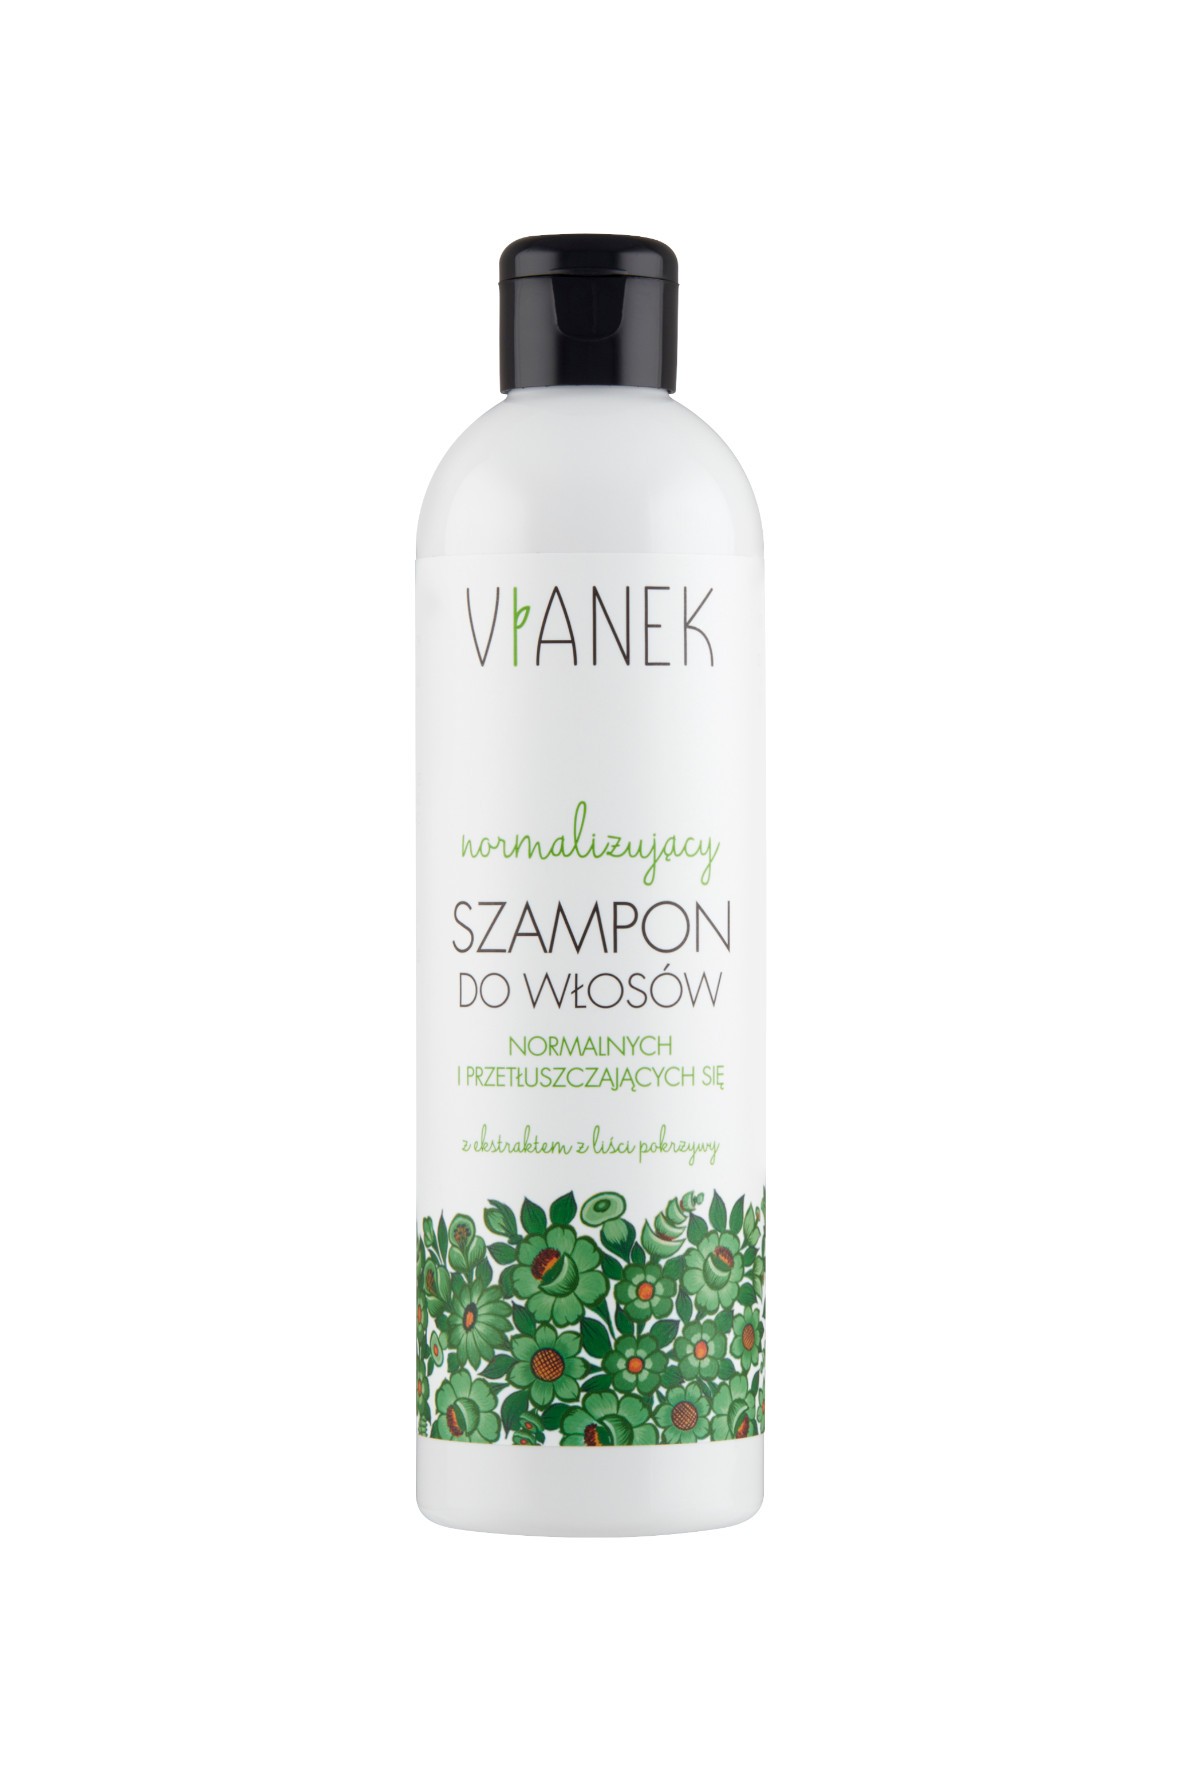 Normalizujący szampon do włosów normalnych i przetłuszczających się Vianek 300 ml